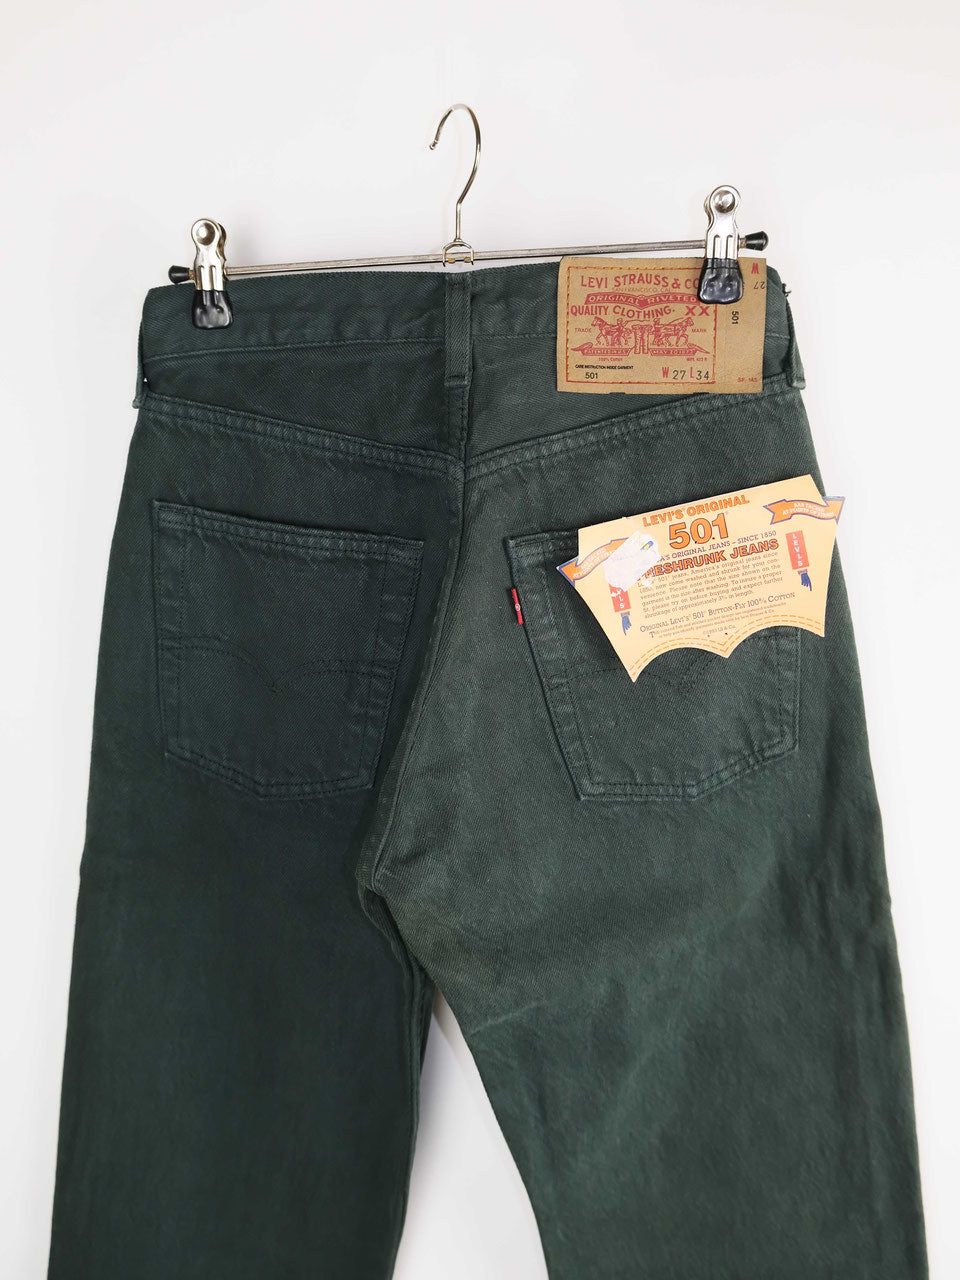 Levis Jeans 501 dark green deadstock